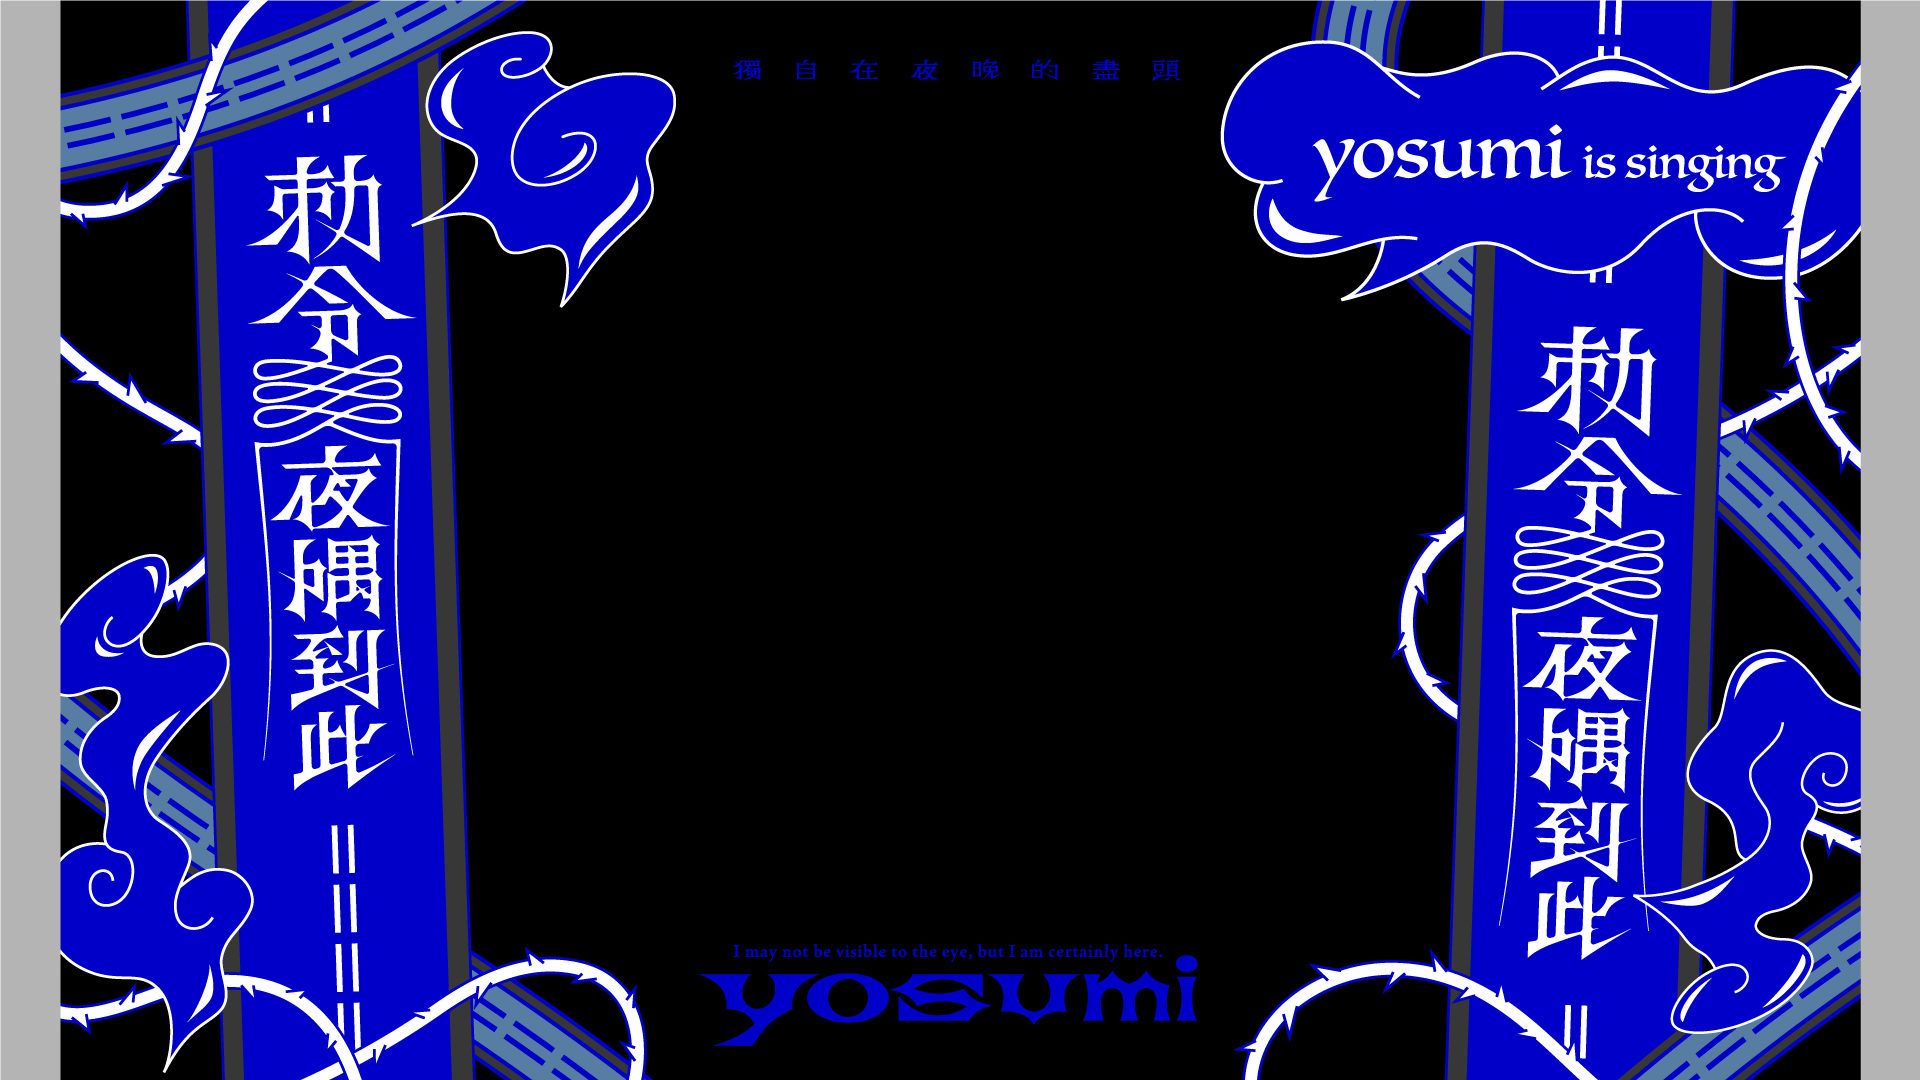 yosumi